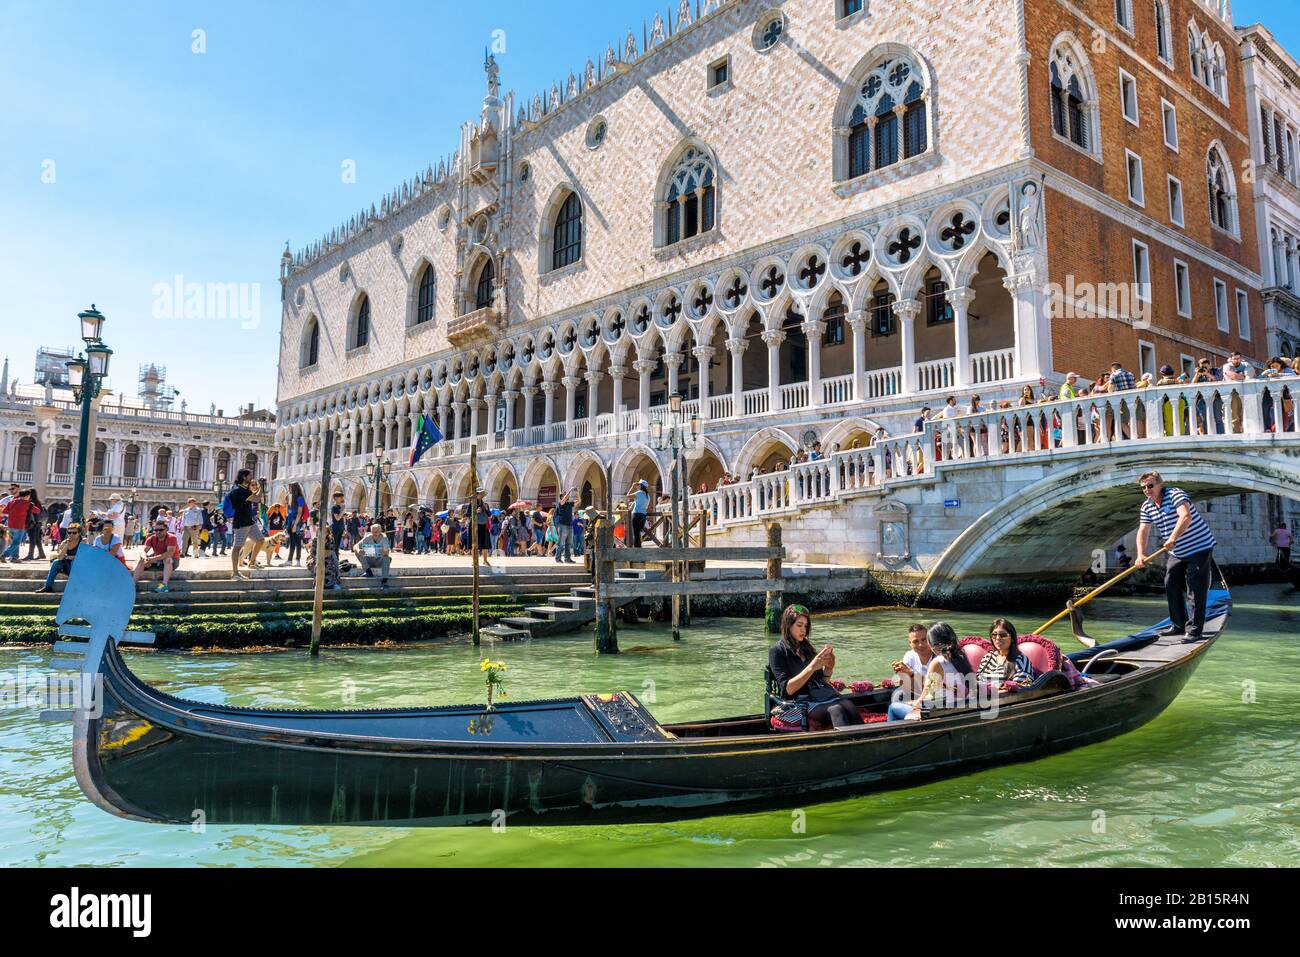 Venise, Italie - 21 mai 2017: La télécabine avec les touristes flotte près du célèbre Palais des Doges (Palazzo Ducale) sur la place St Marc. Palais des Doges i Banque D'Images